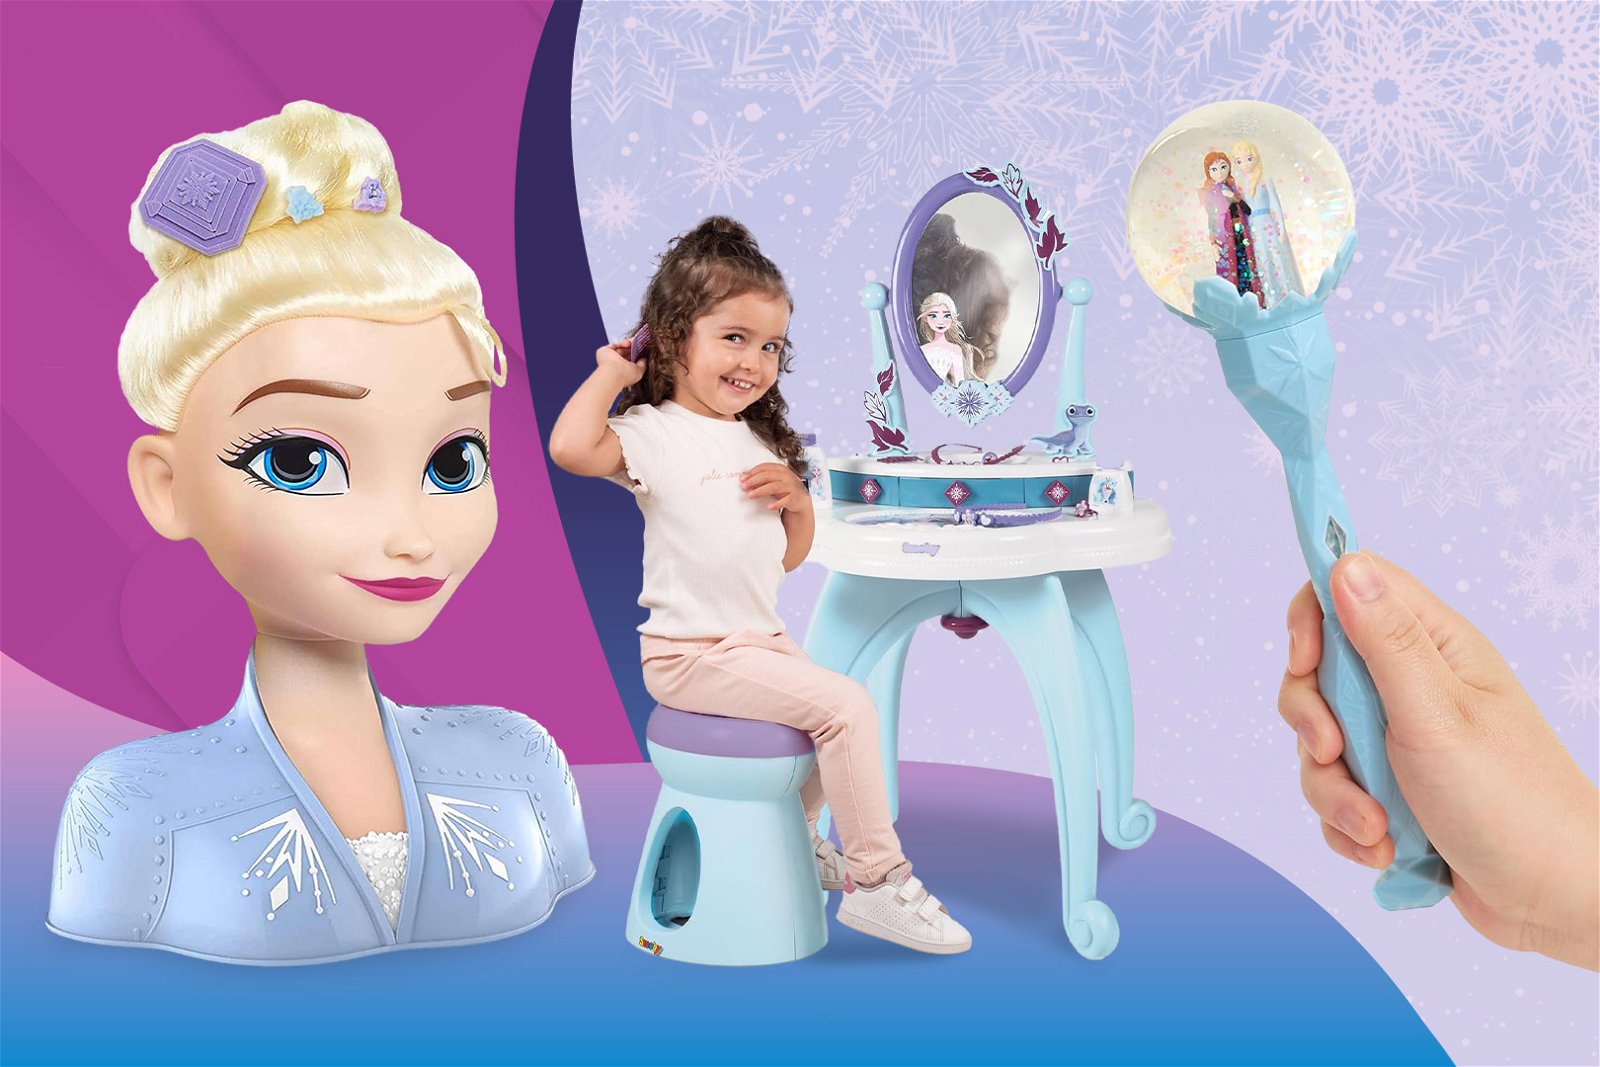 Oral-b Spazzolino Elettrico Ricaricabile Bambini Dai 3 Anni Con Disegni  Disney Personaggi Frozen